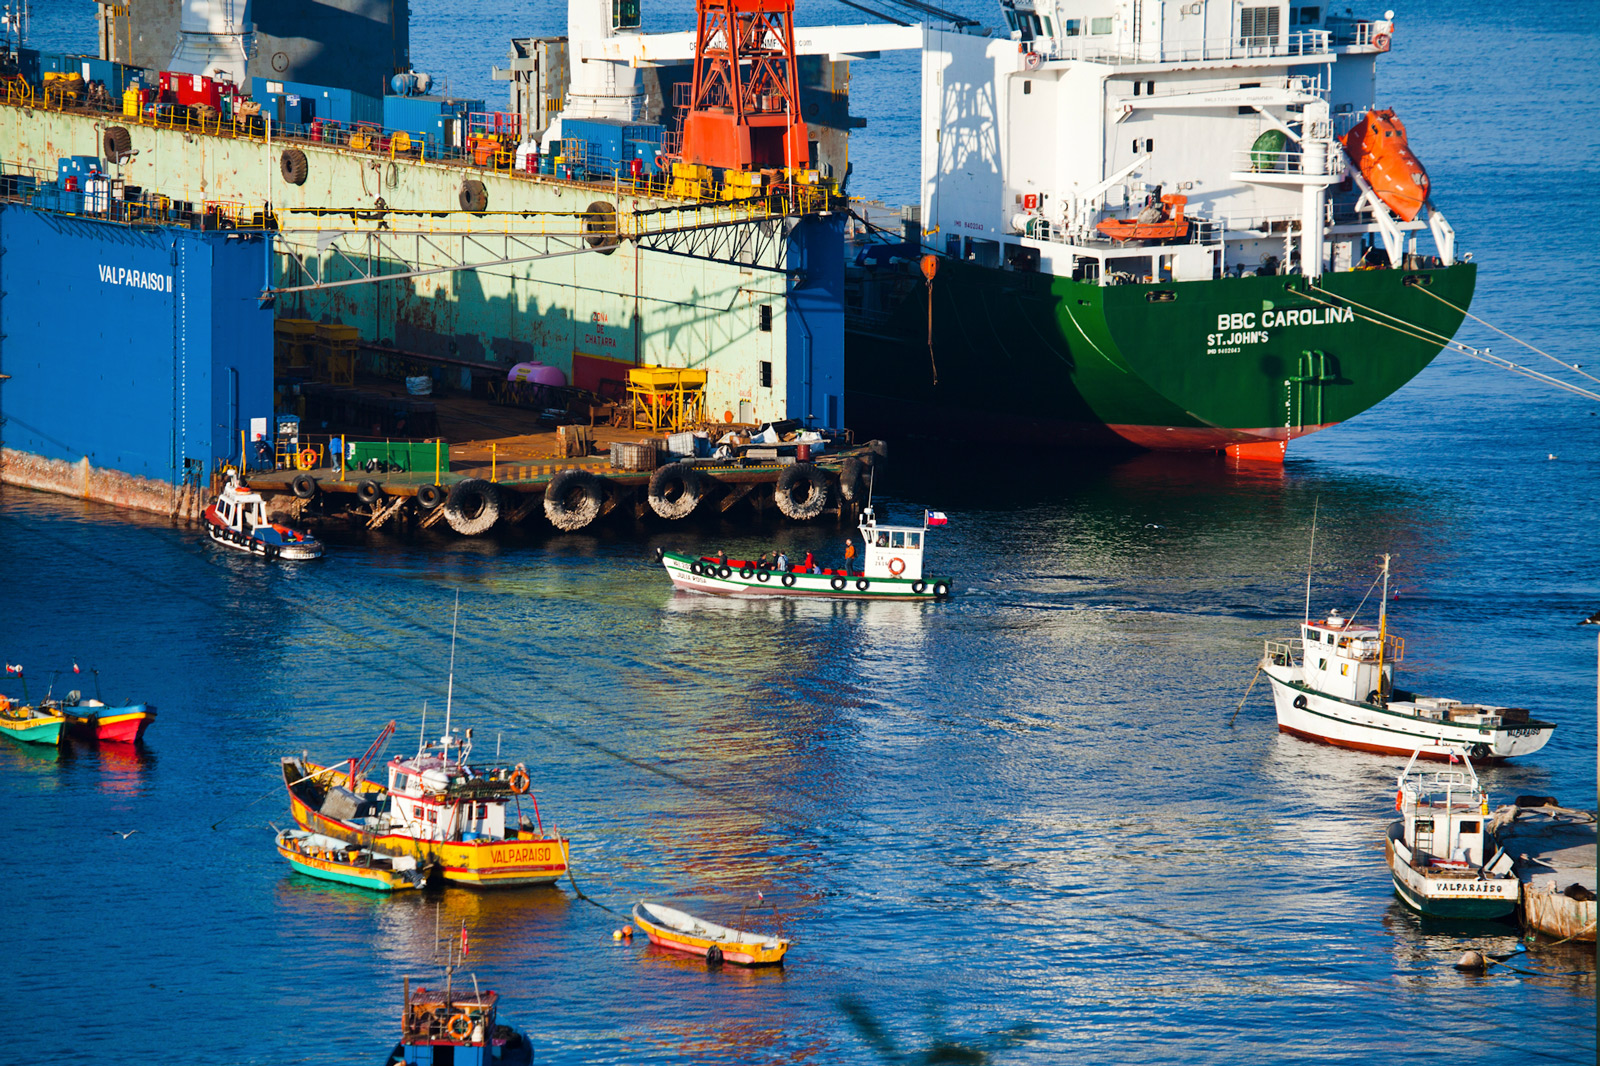 Valparaíso Port, Chile